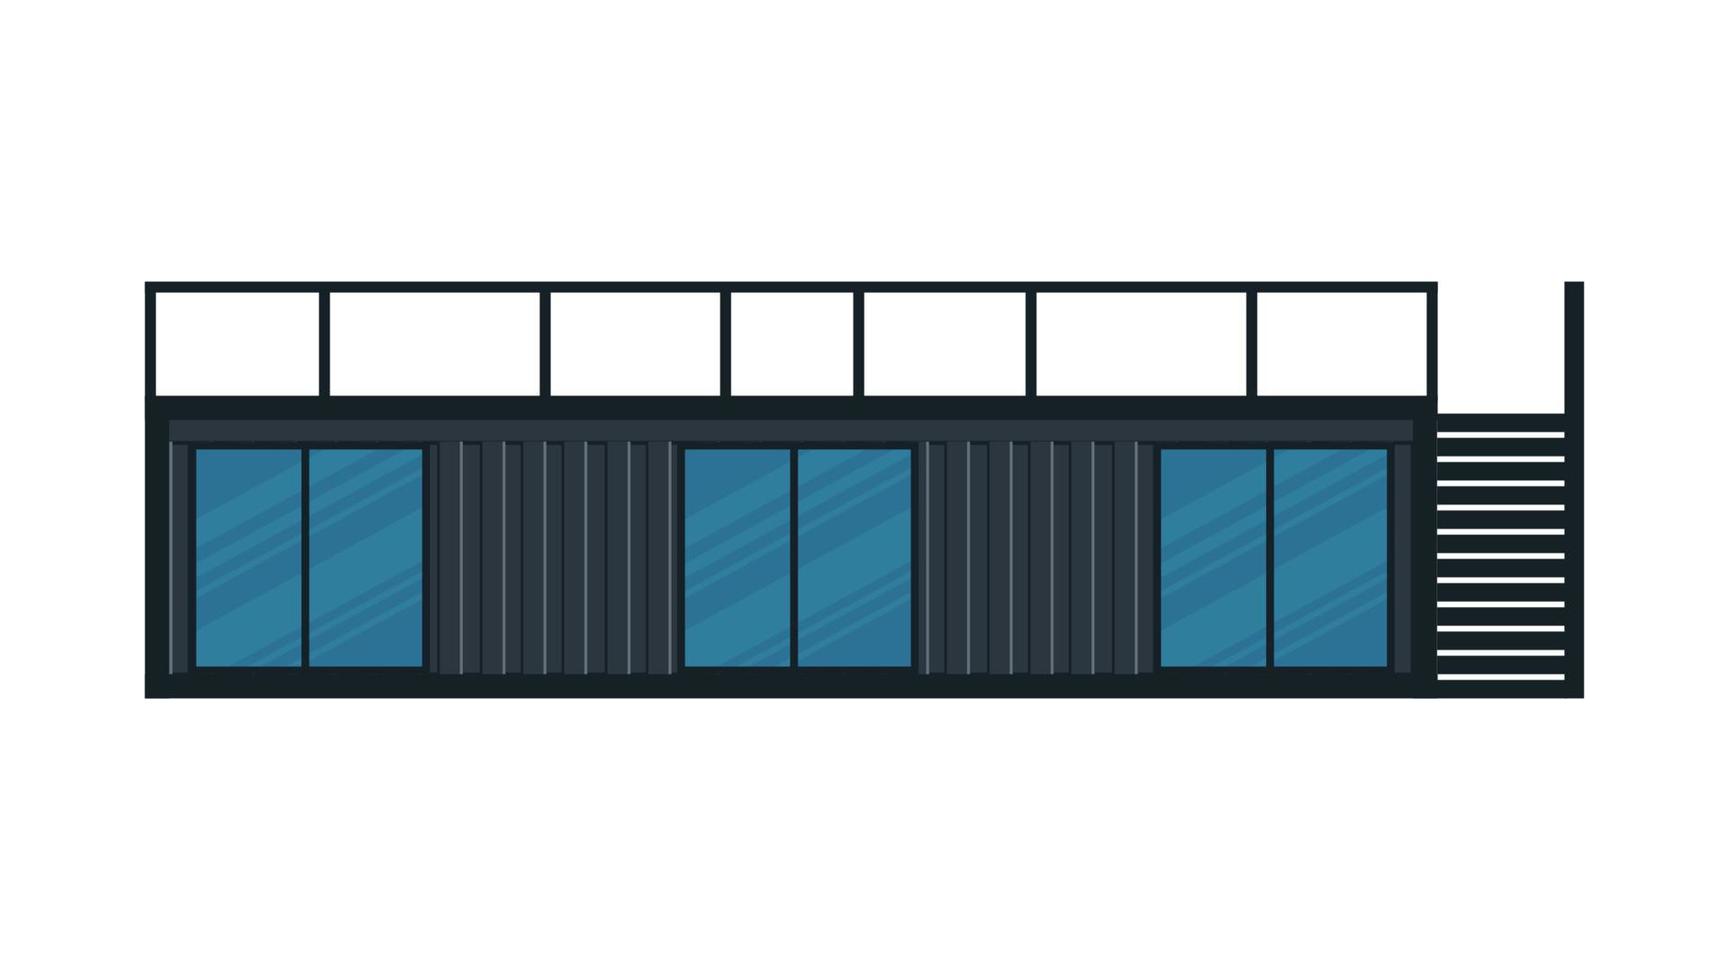 hus, café av svart last container.one-berättelse byggnad med en veranda ur container för fartyg isolerad på en vit bakgrund. vektor illustration.